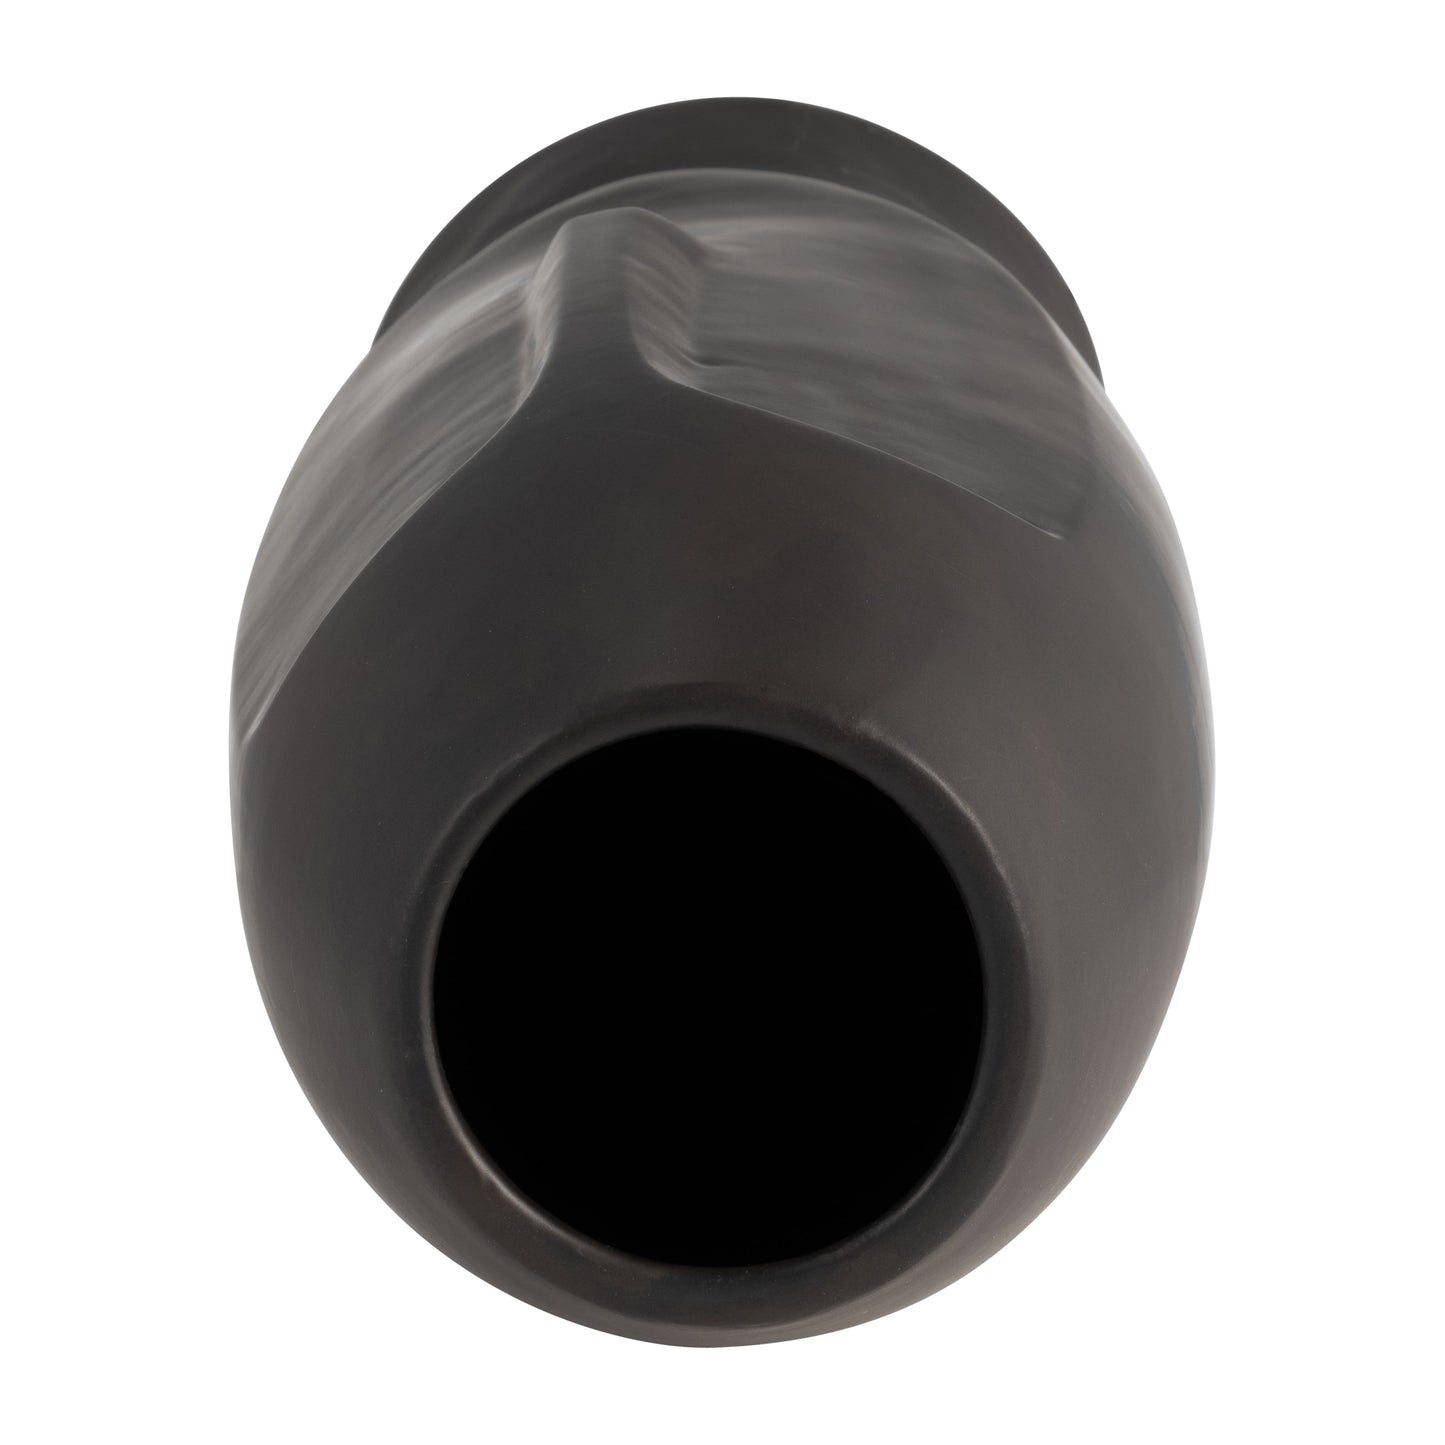 Janus Black Ceramic Vase 14"